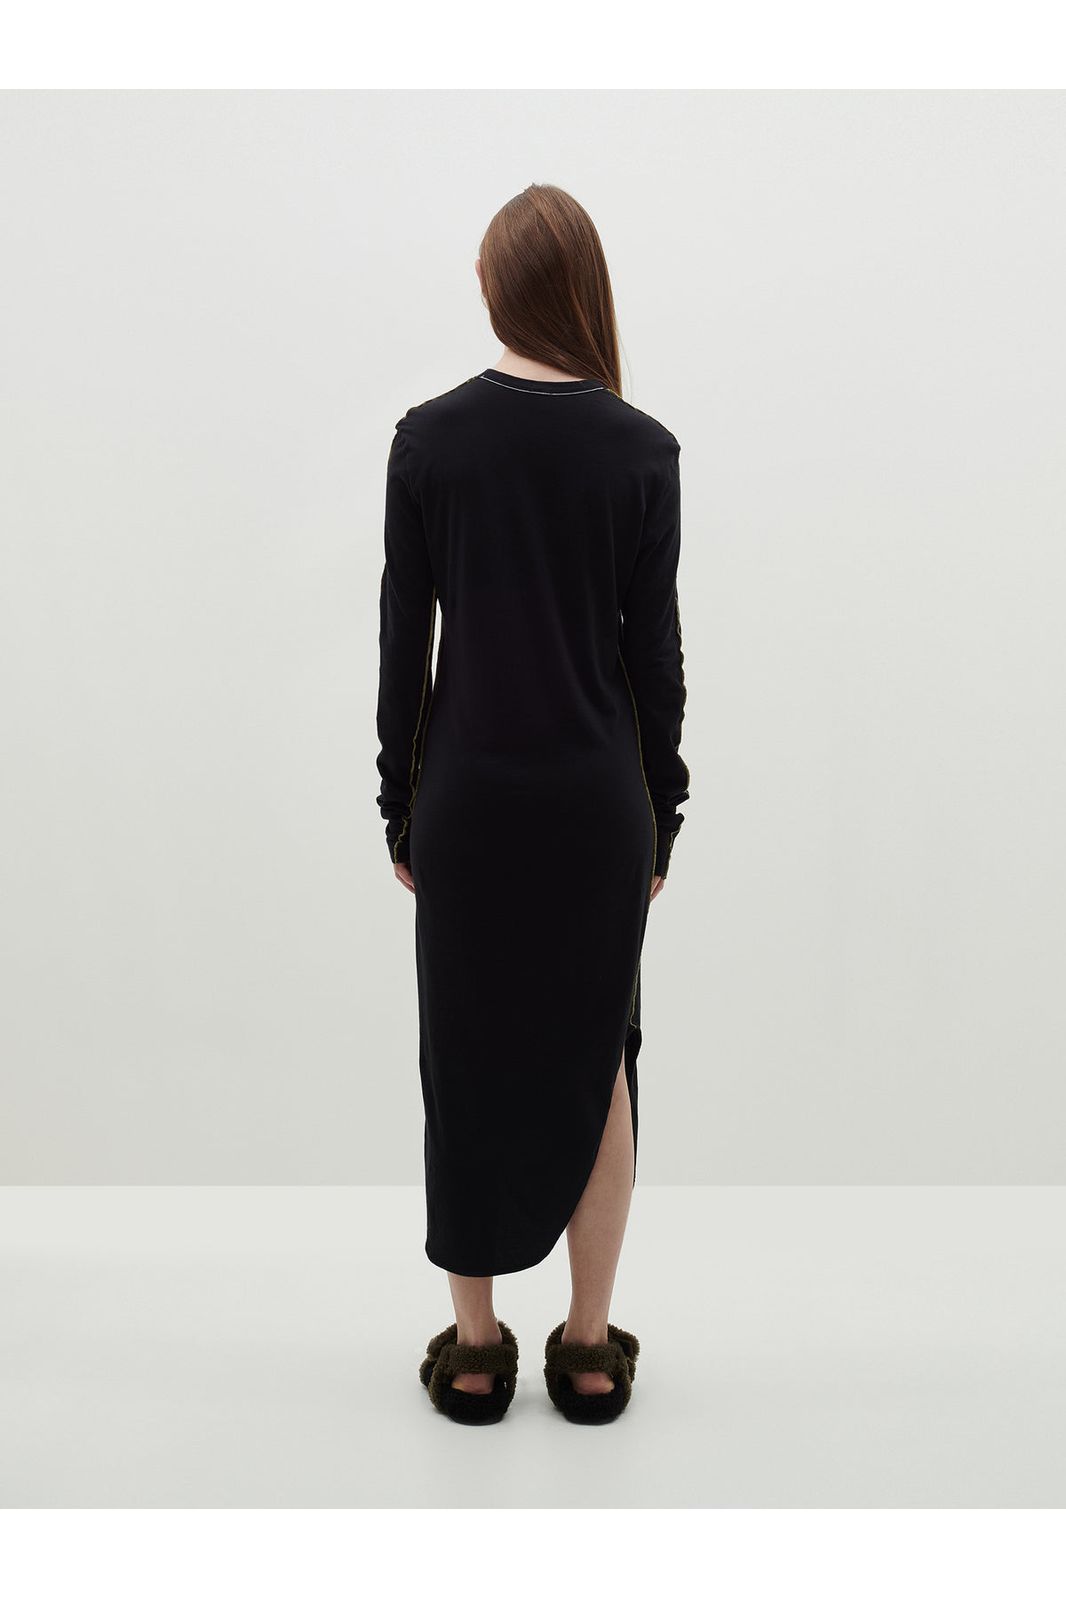 Contrast Scoop Hem Long Sleeve Dress in Black Malt by Bassike